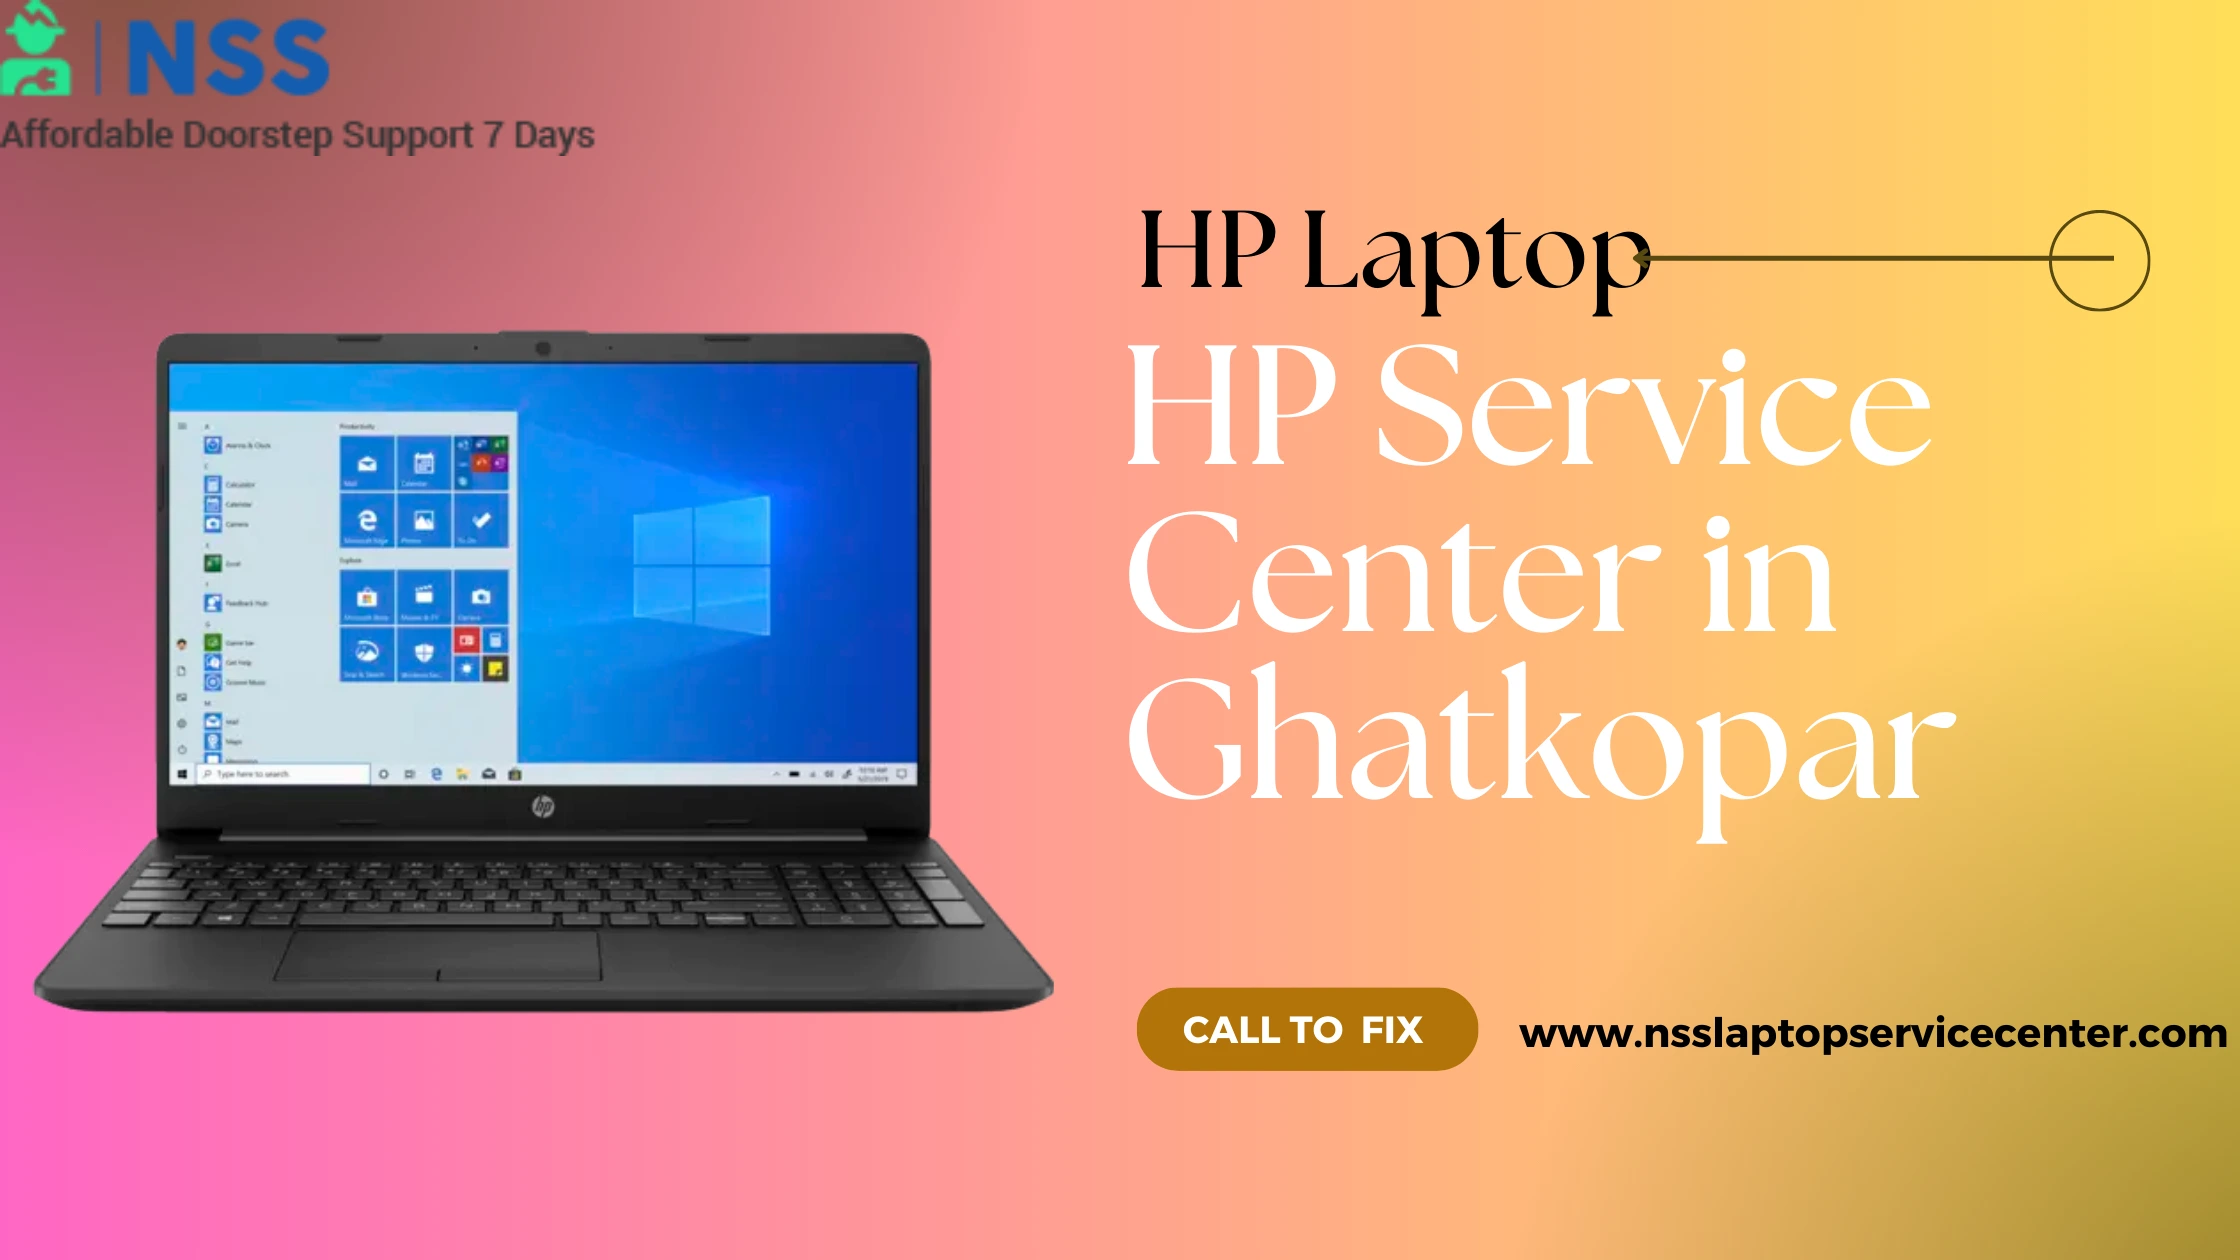 HP Service Center in Ghatkopar Near Mumbai